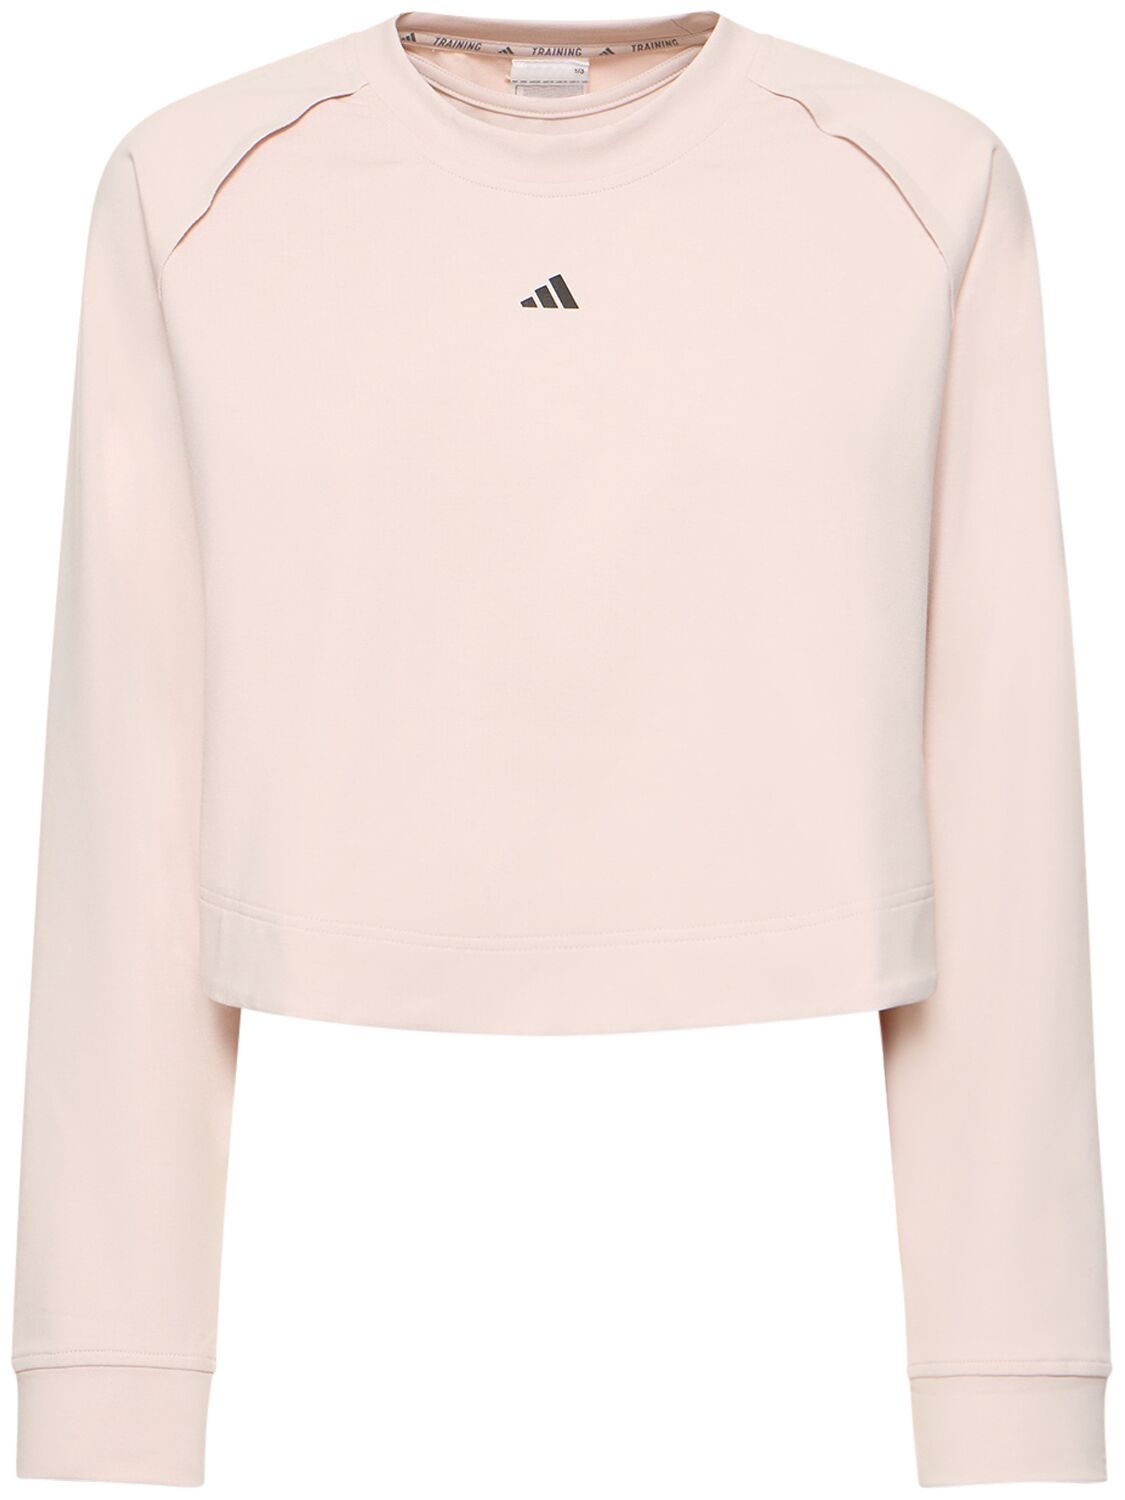 Adidas Originals Power Cover Up Crew Sweatshirt In Pink